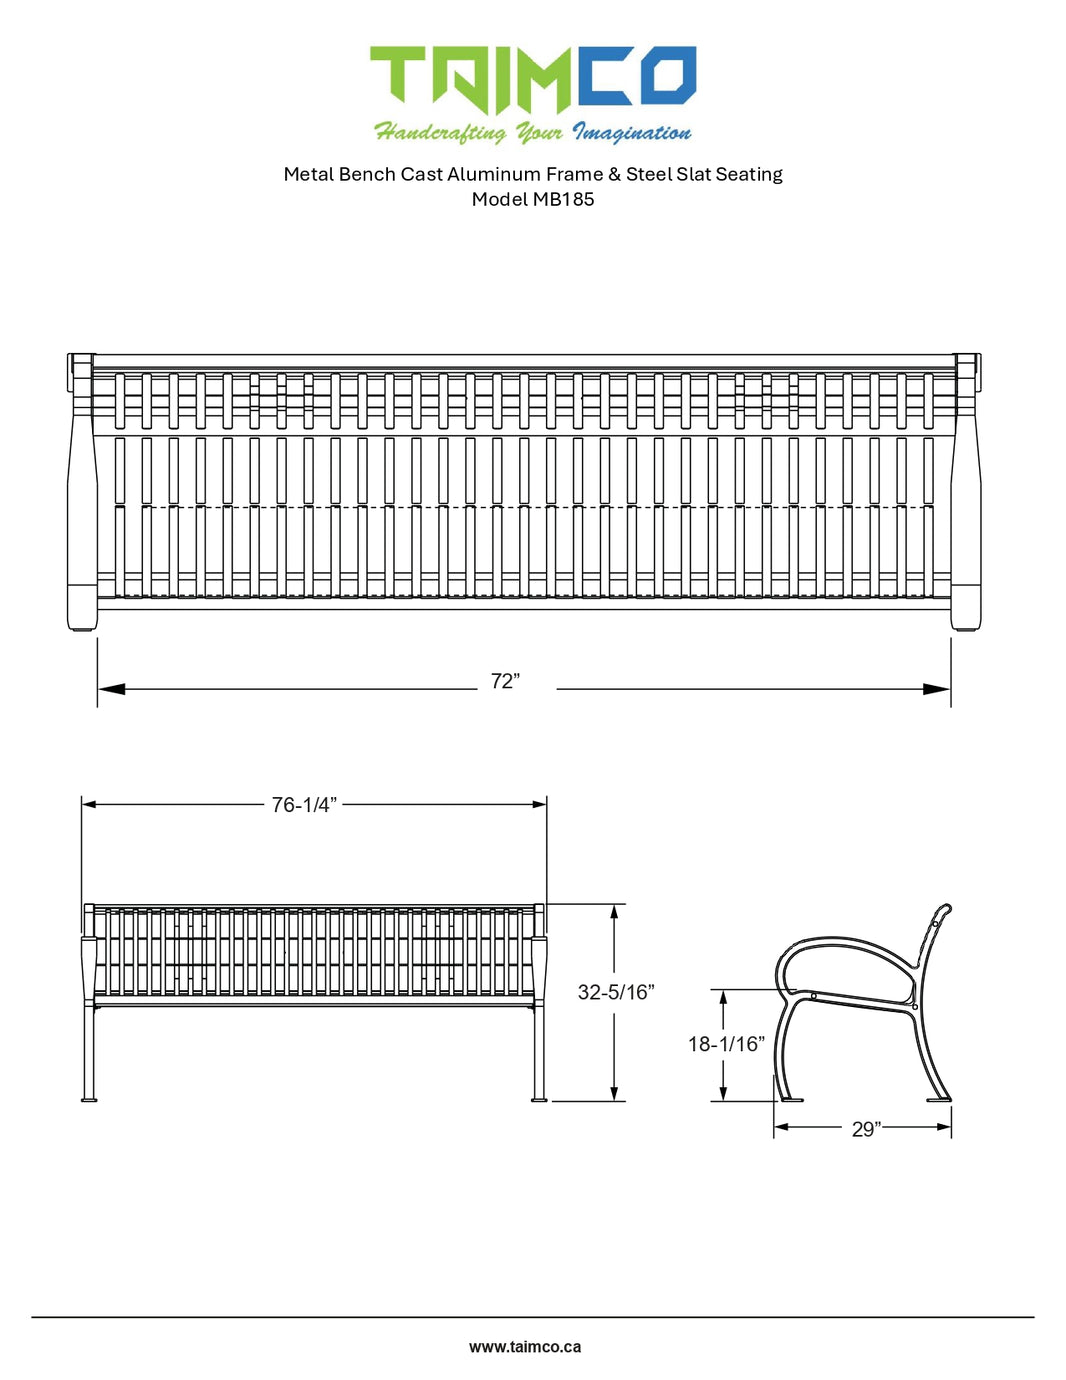 Metal Bench Cast Aluminum Frame & Steel Slat Seating | Model MB185